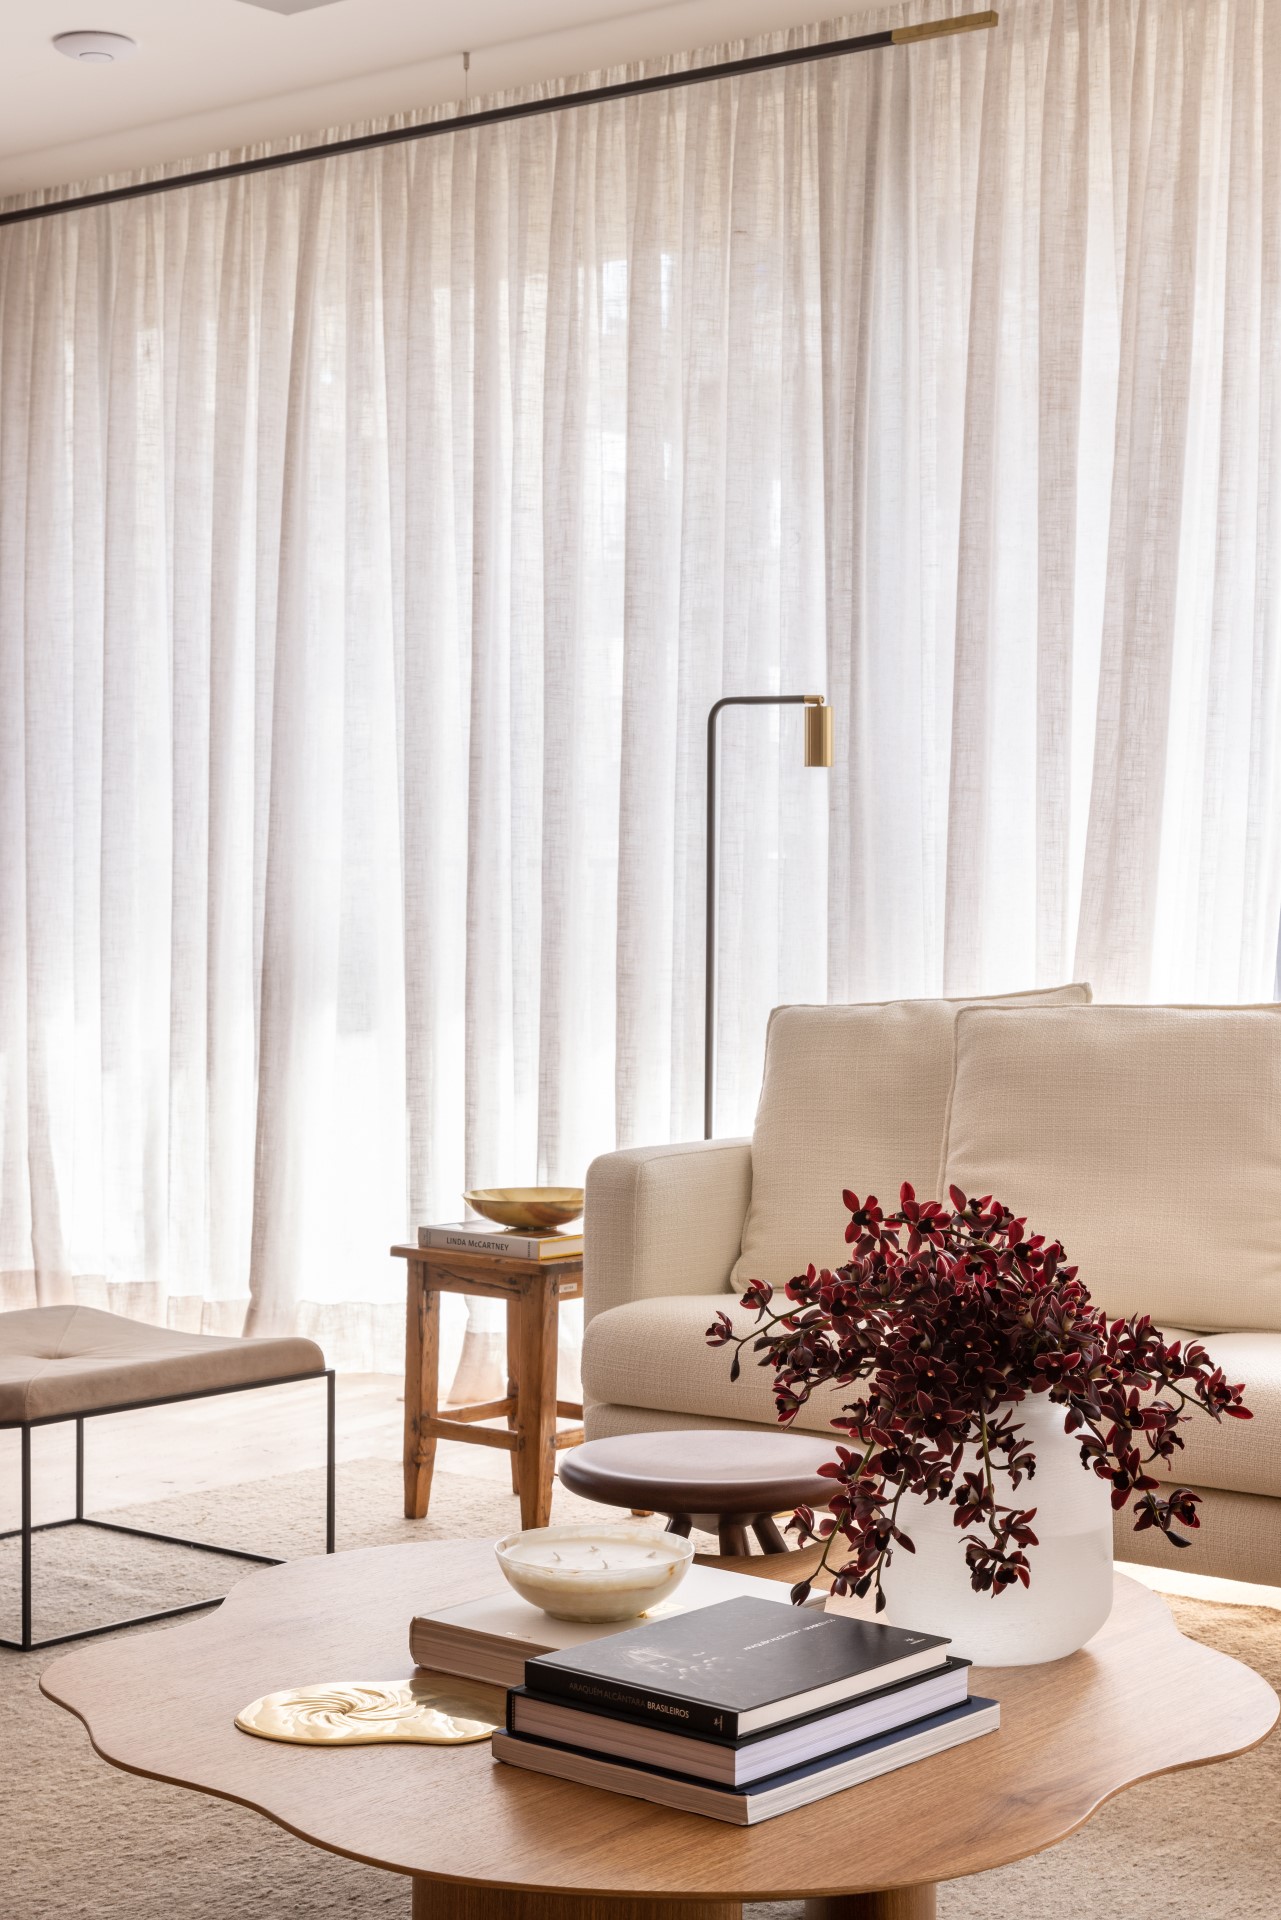 Projeto de Denise Polverini e Fernanda Villefort. Na foto, sala de estar em tons beges com tapete, mesa de centro de madeira e sofá branco.